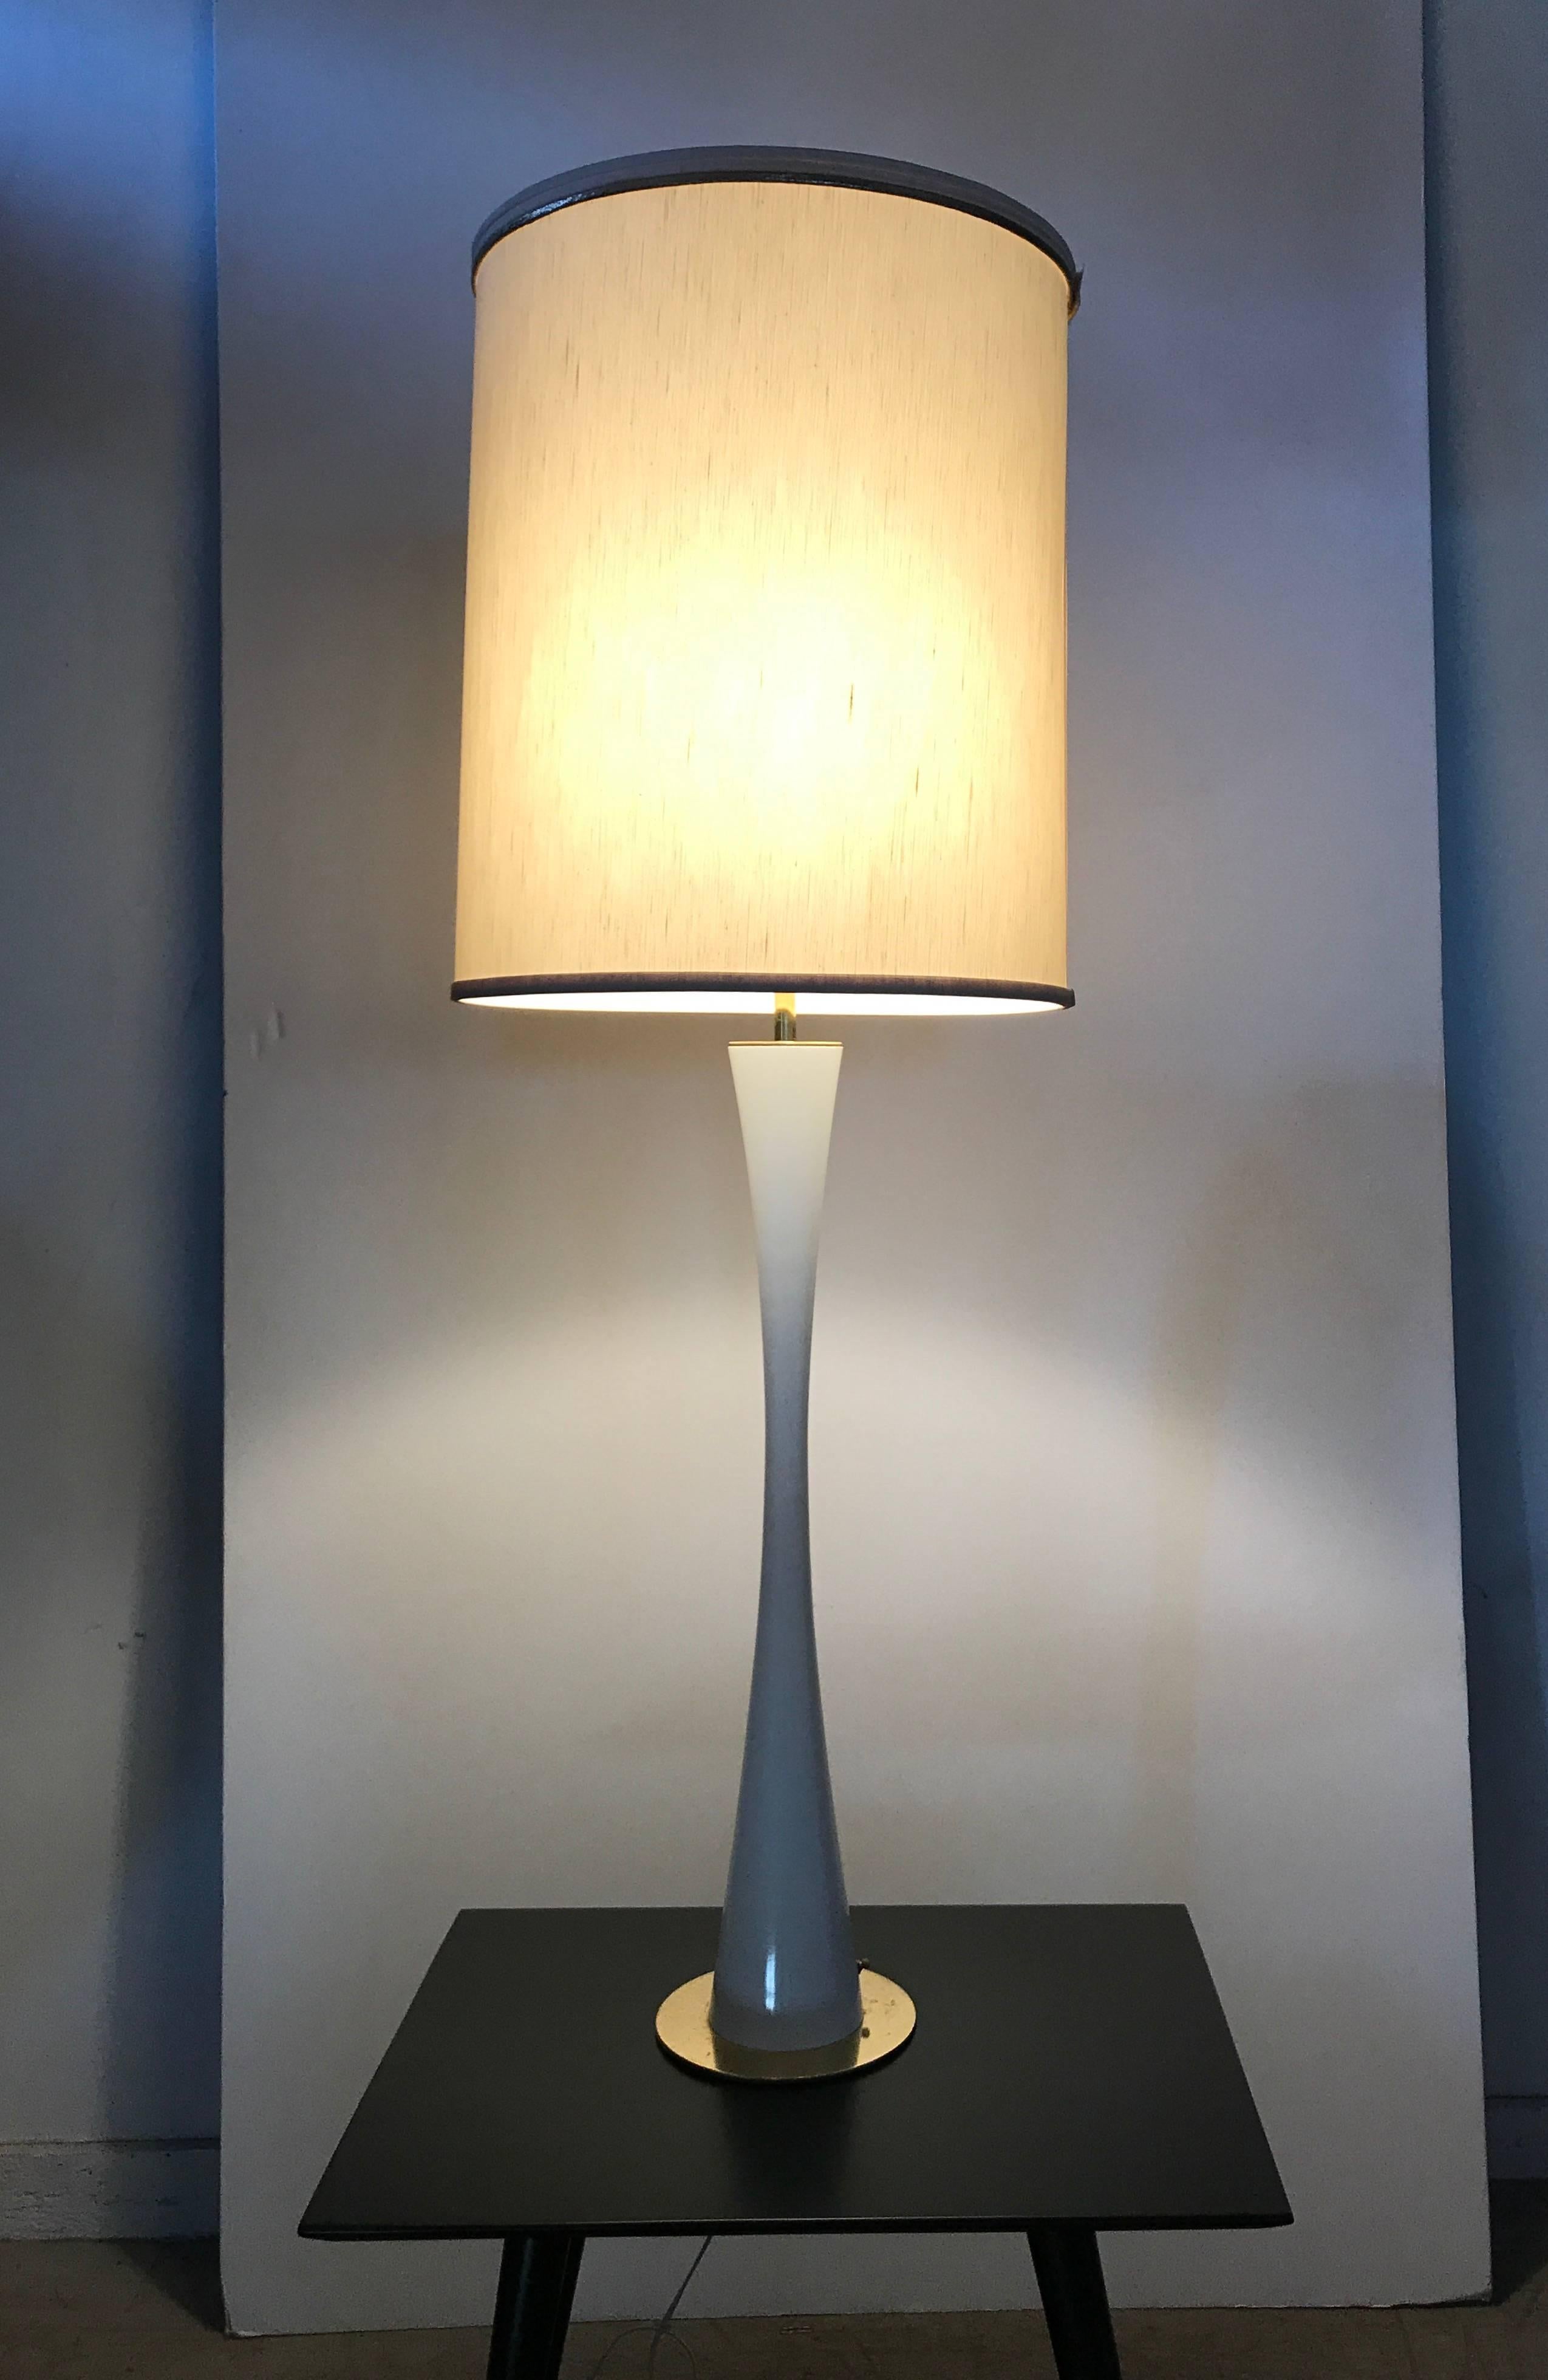 Lampe élégante, sexy, extra haute, en émail blanc et laiton, par Stewart Ross James pour Hansen, qualité et design étonnants, peut être utilisée comme lampe de table ou de sol, mesure 50 pouces de haut, conserve l'abat-jour original. Fonction